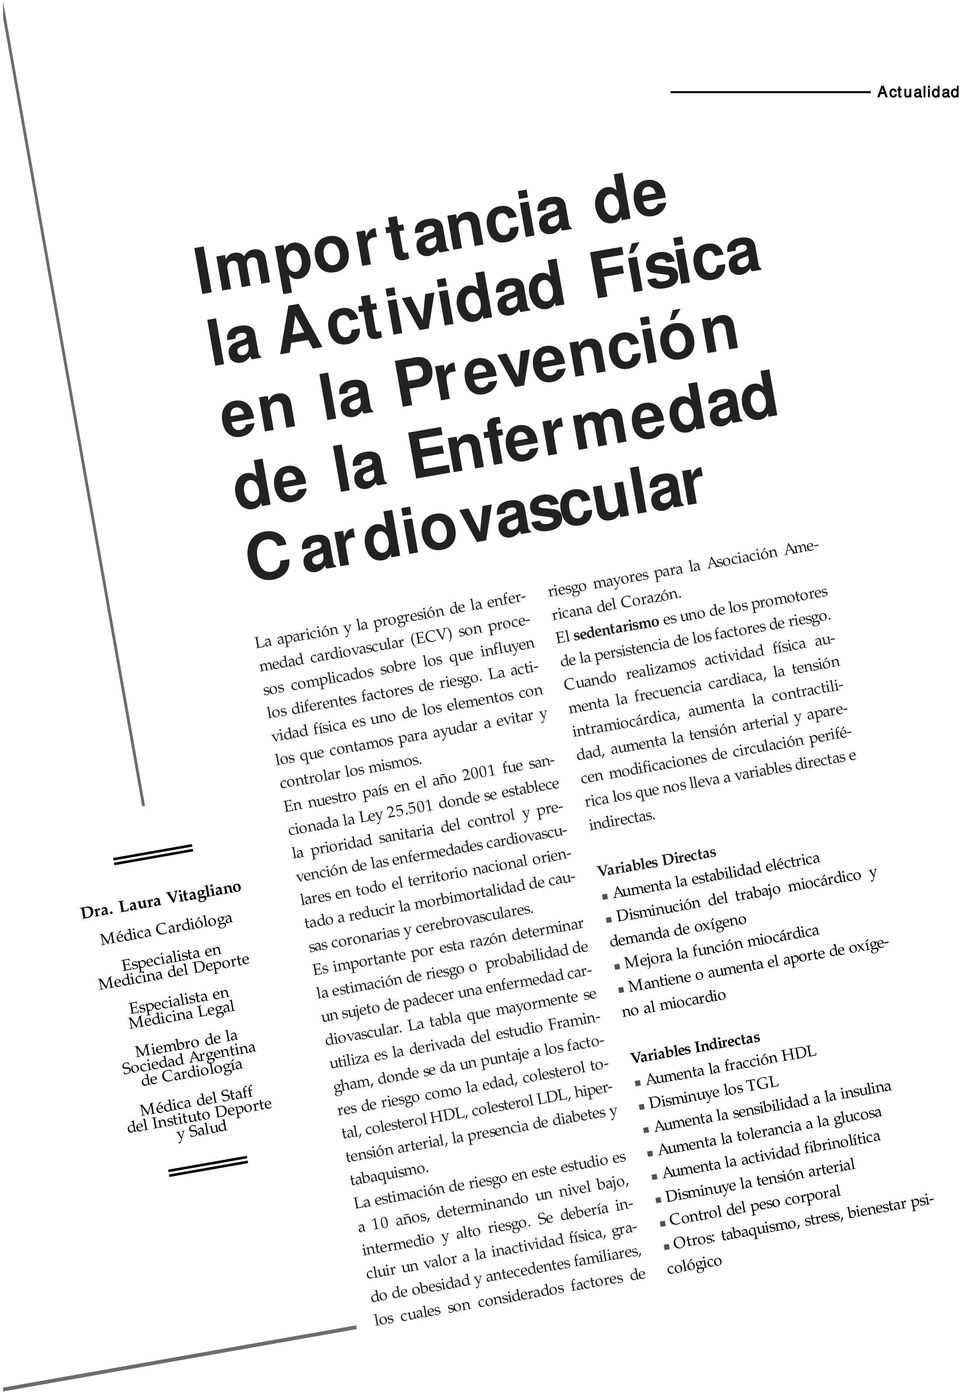 Importancia de la Actividad Física en la Prevención de la Enfermedad Cardiovascular La aparición y la progresión de la enfermedad cardiovascular (ECV) son procesos complicados sobre los que influyen